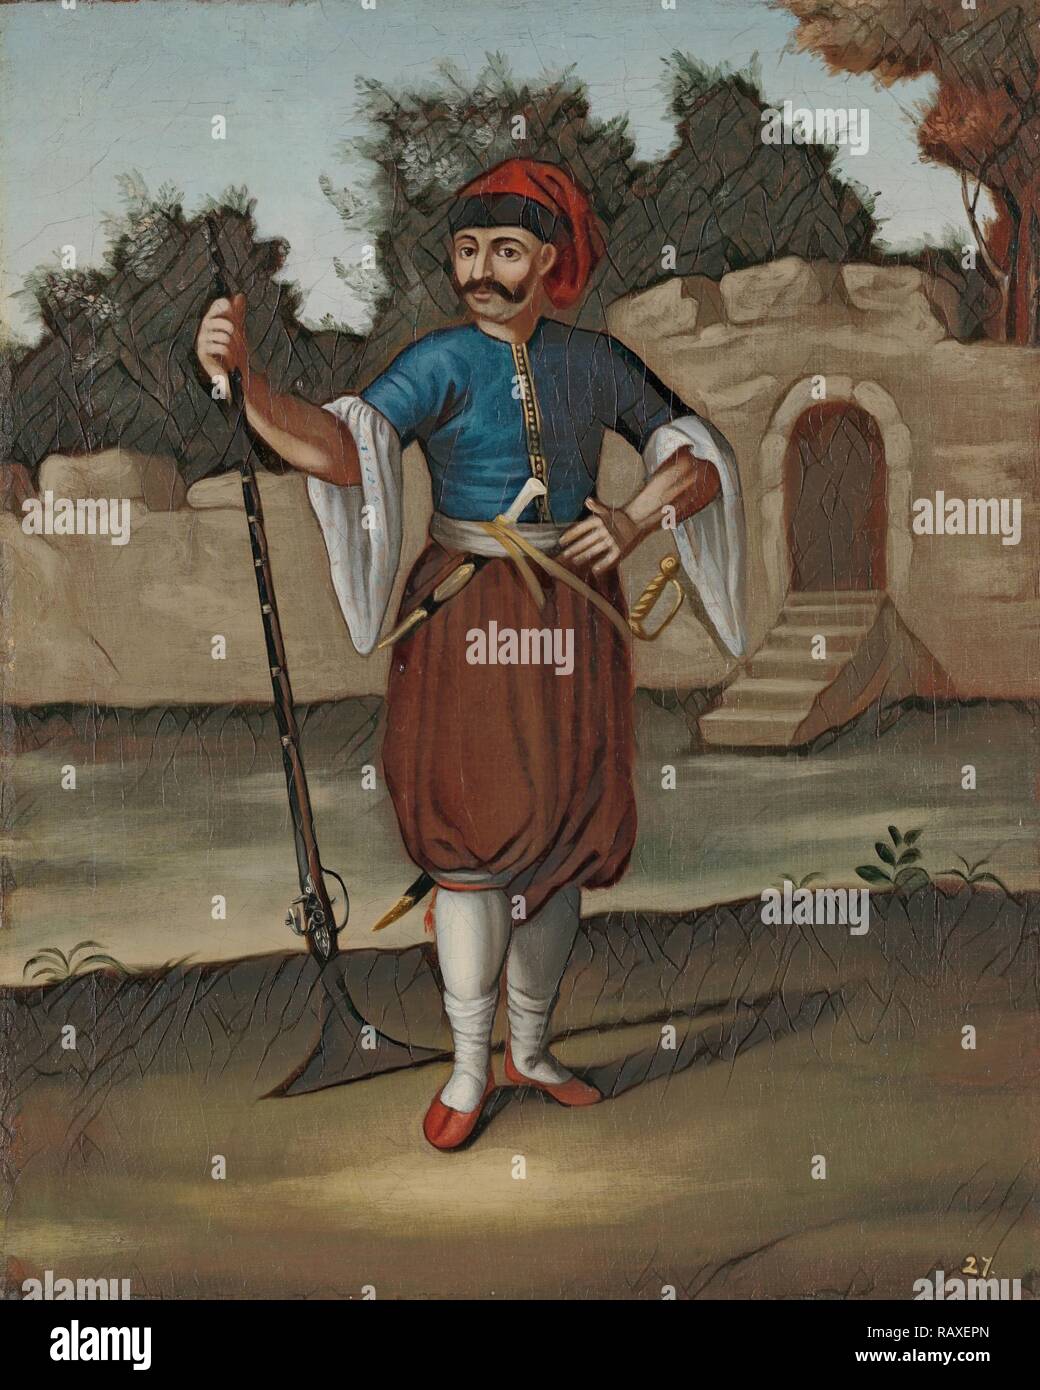 Soldato albanese, officina di Jean Baptiste Vanmour, 1700 - 1737. Reinventato da Gibon. Arte Classica con un moderno reinventato Foto Stock